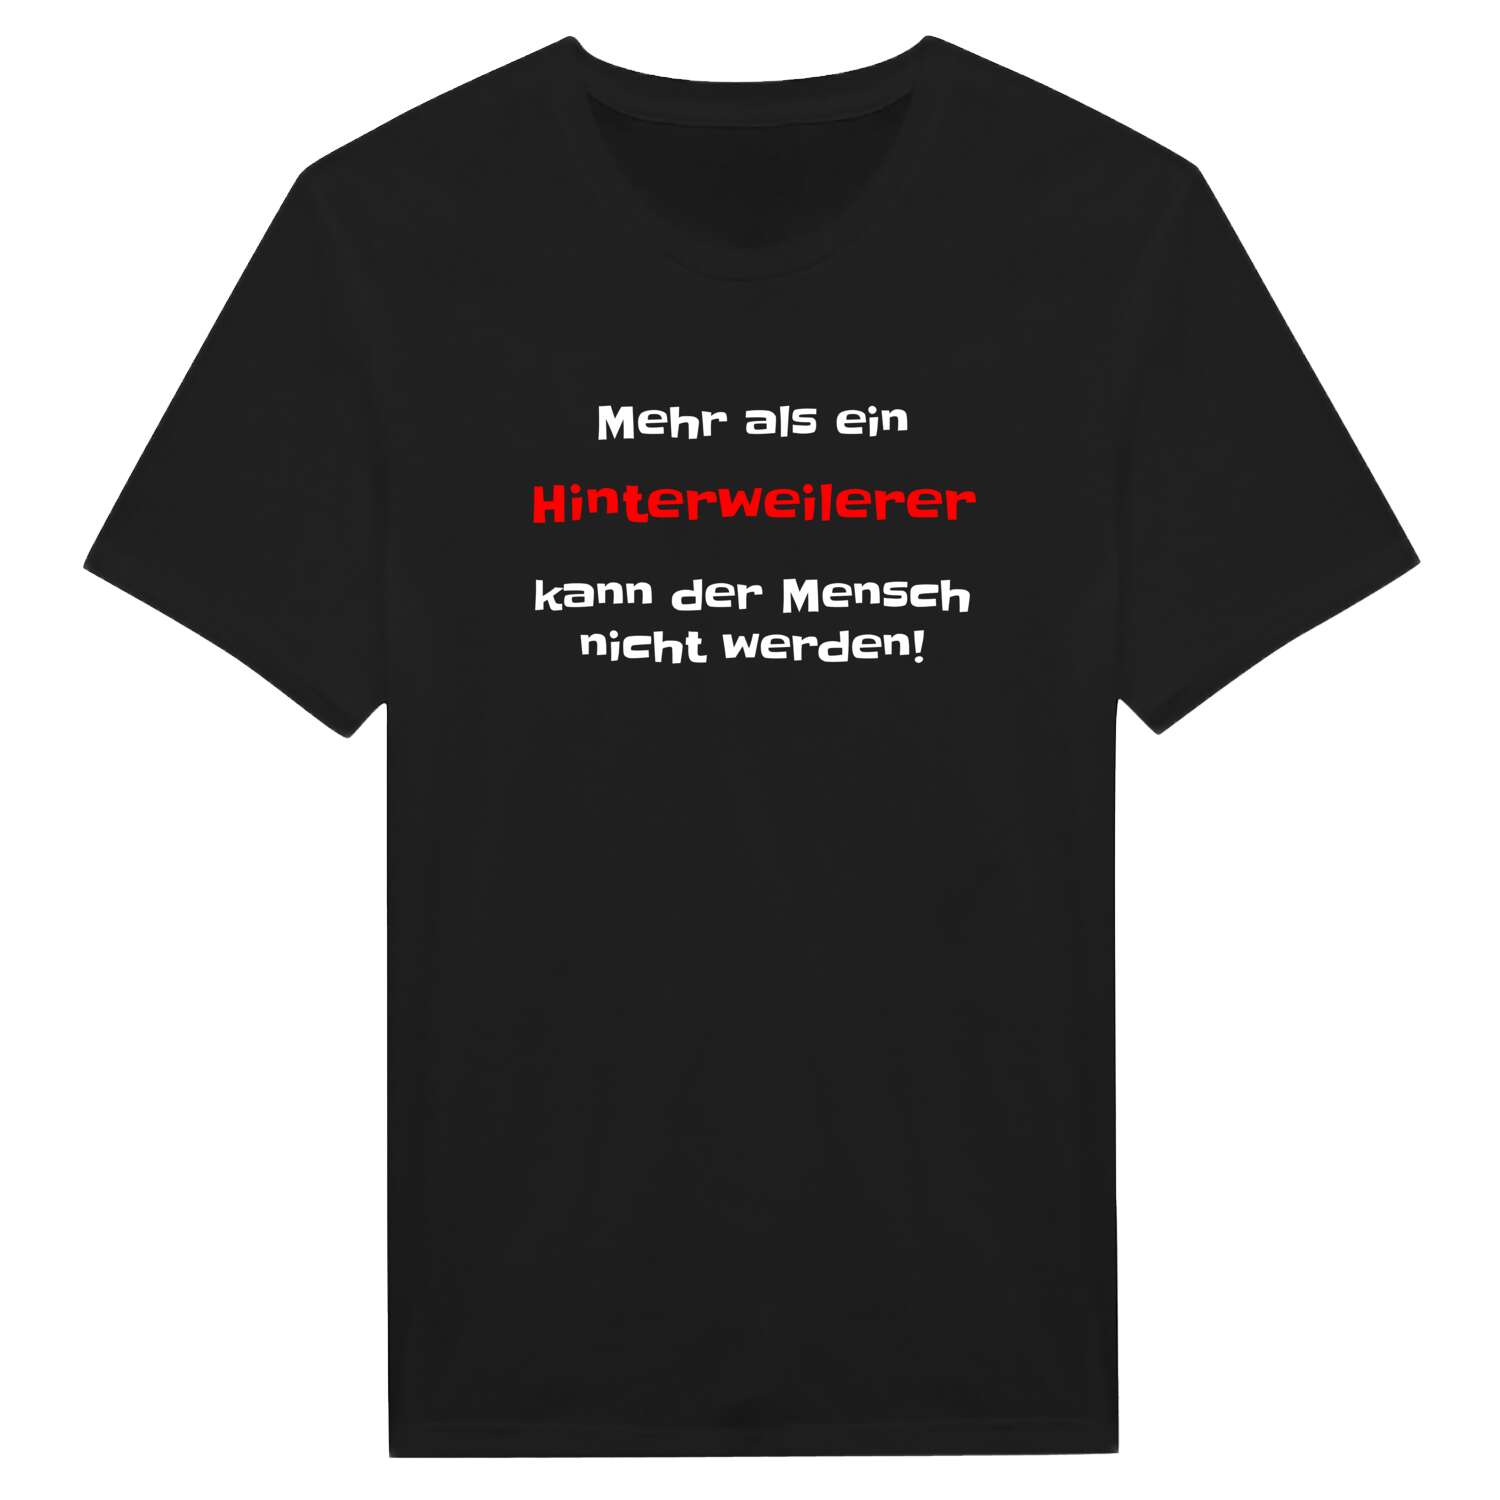 Hinterweiler T-Shirt »Mehr als ein«